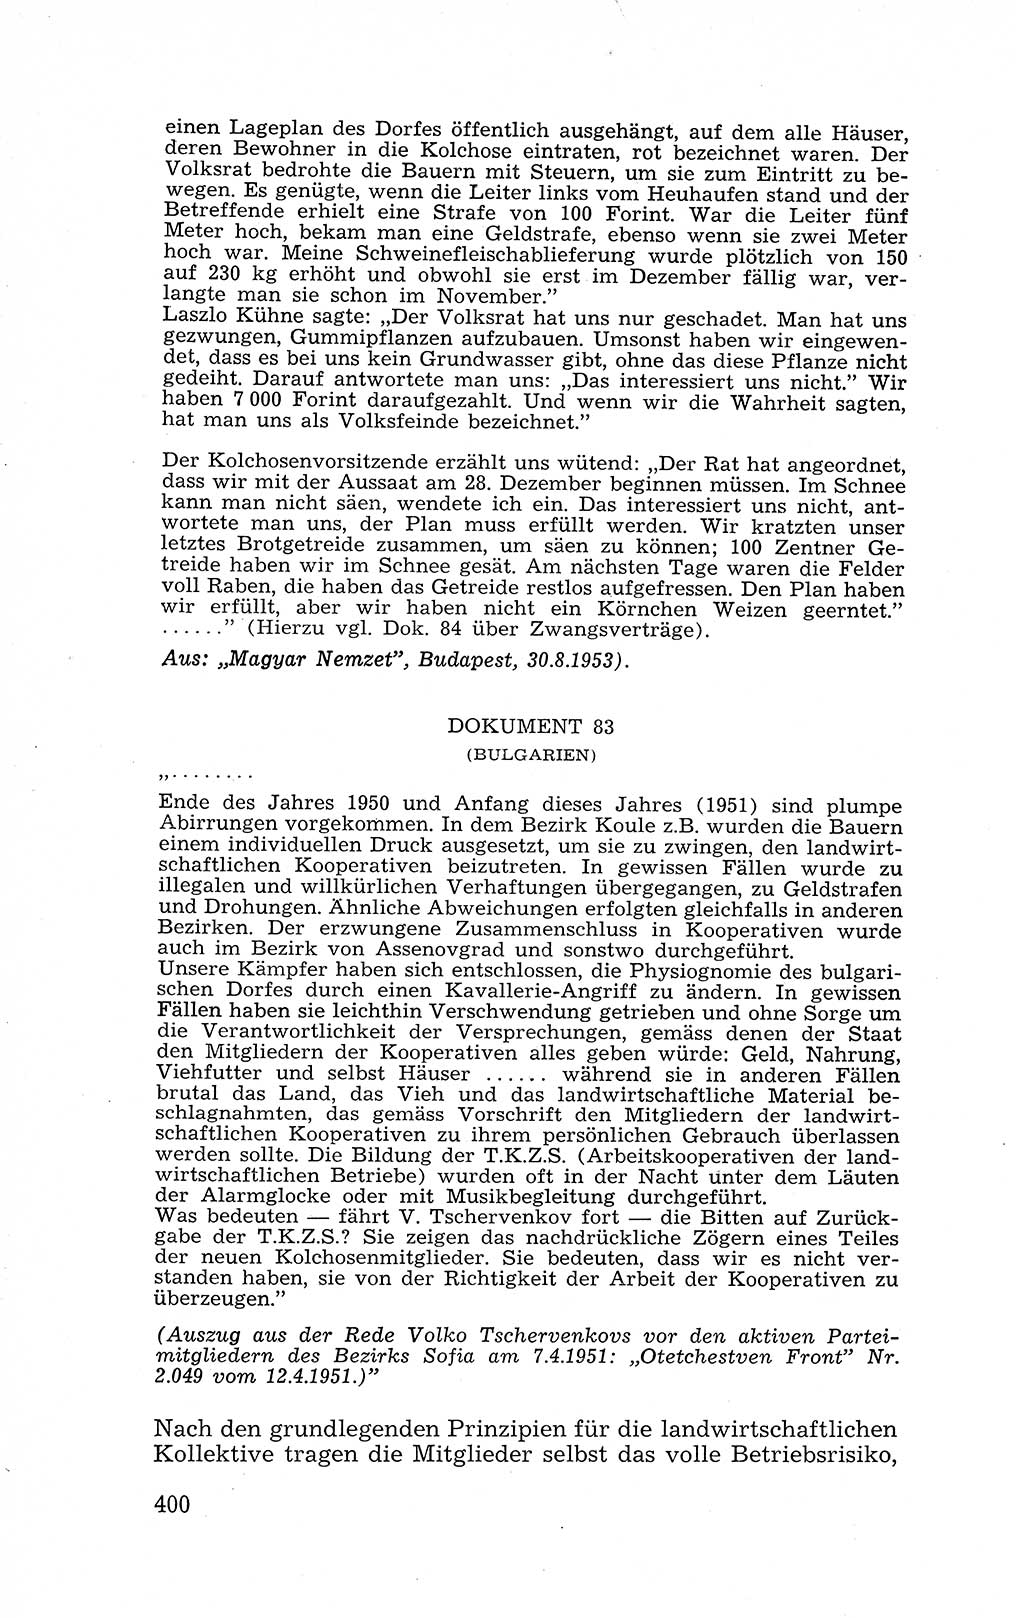 Recht in Fesseln, Dokumente, Internationale Juristen-Kommission [Bundesrepublik Deutschland (BRD)] 1955, Seite 400 (R. Dok. IJK BRD 1955, S. 400)